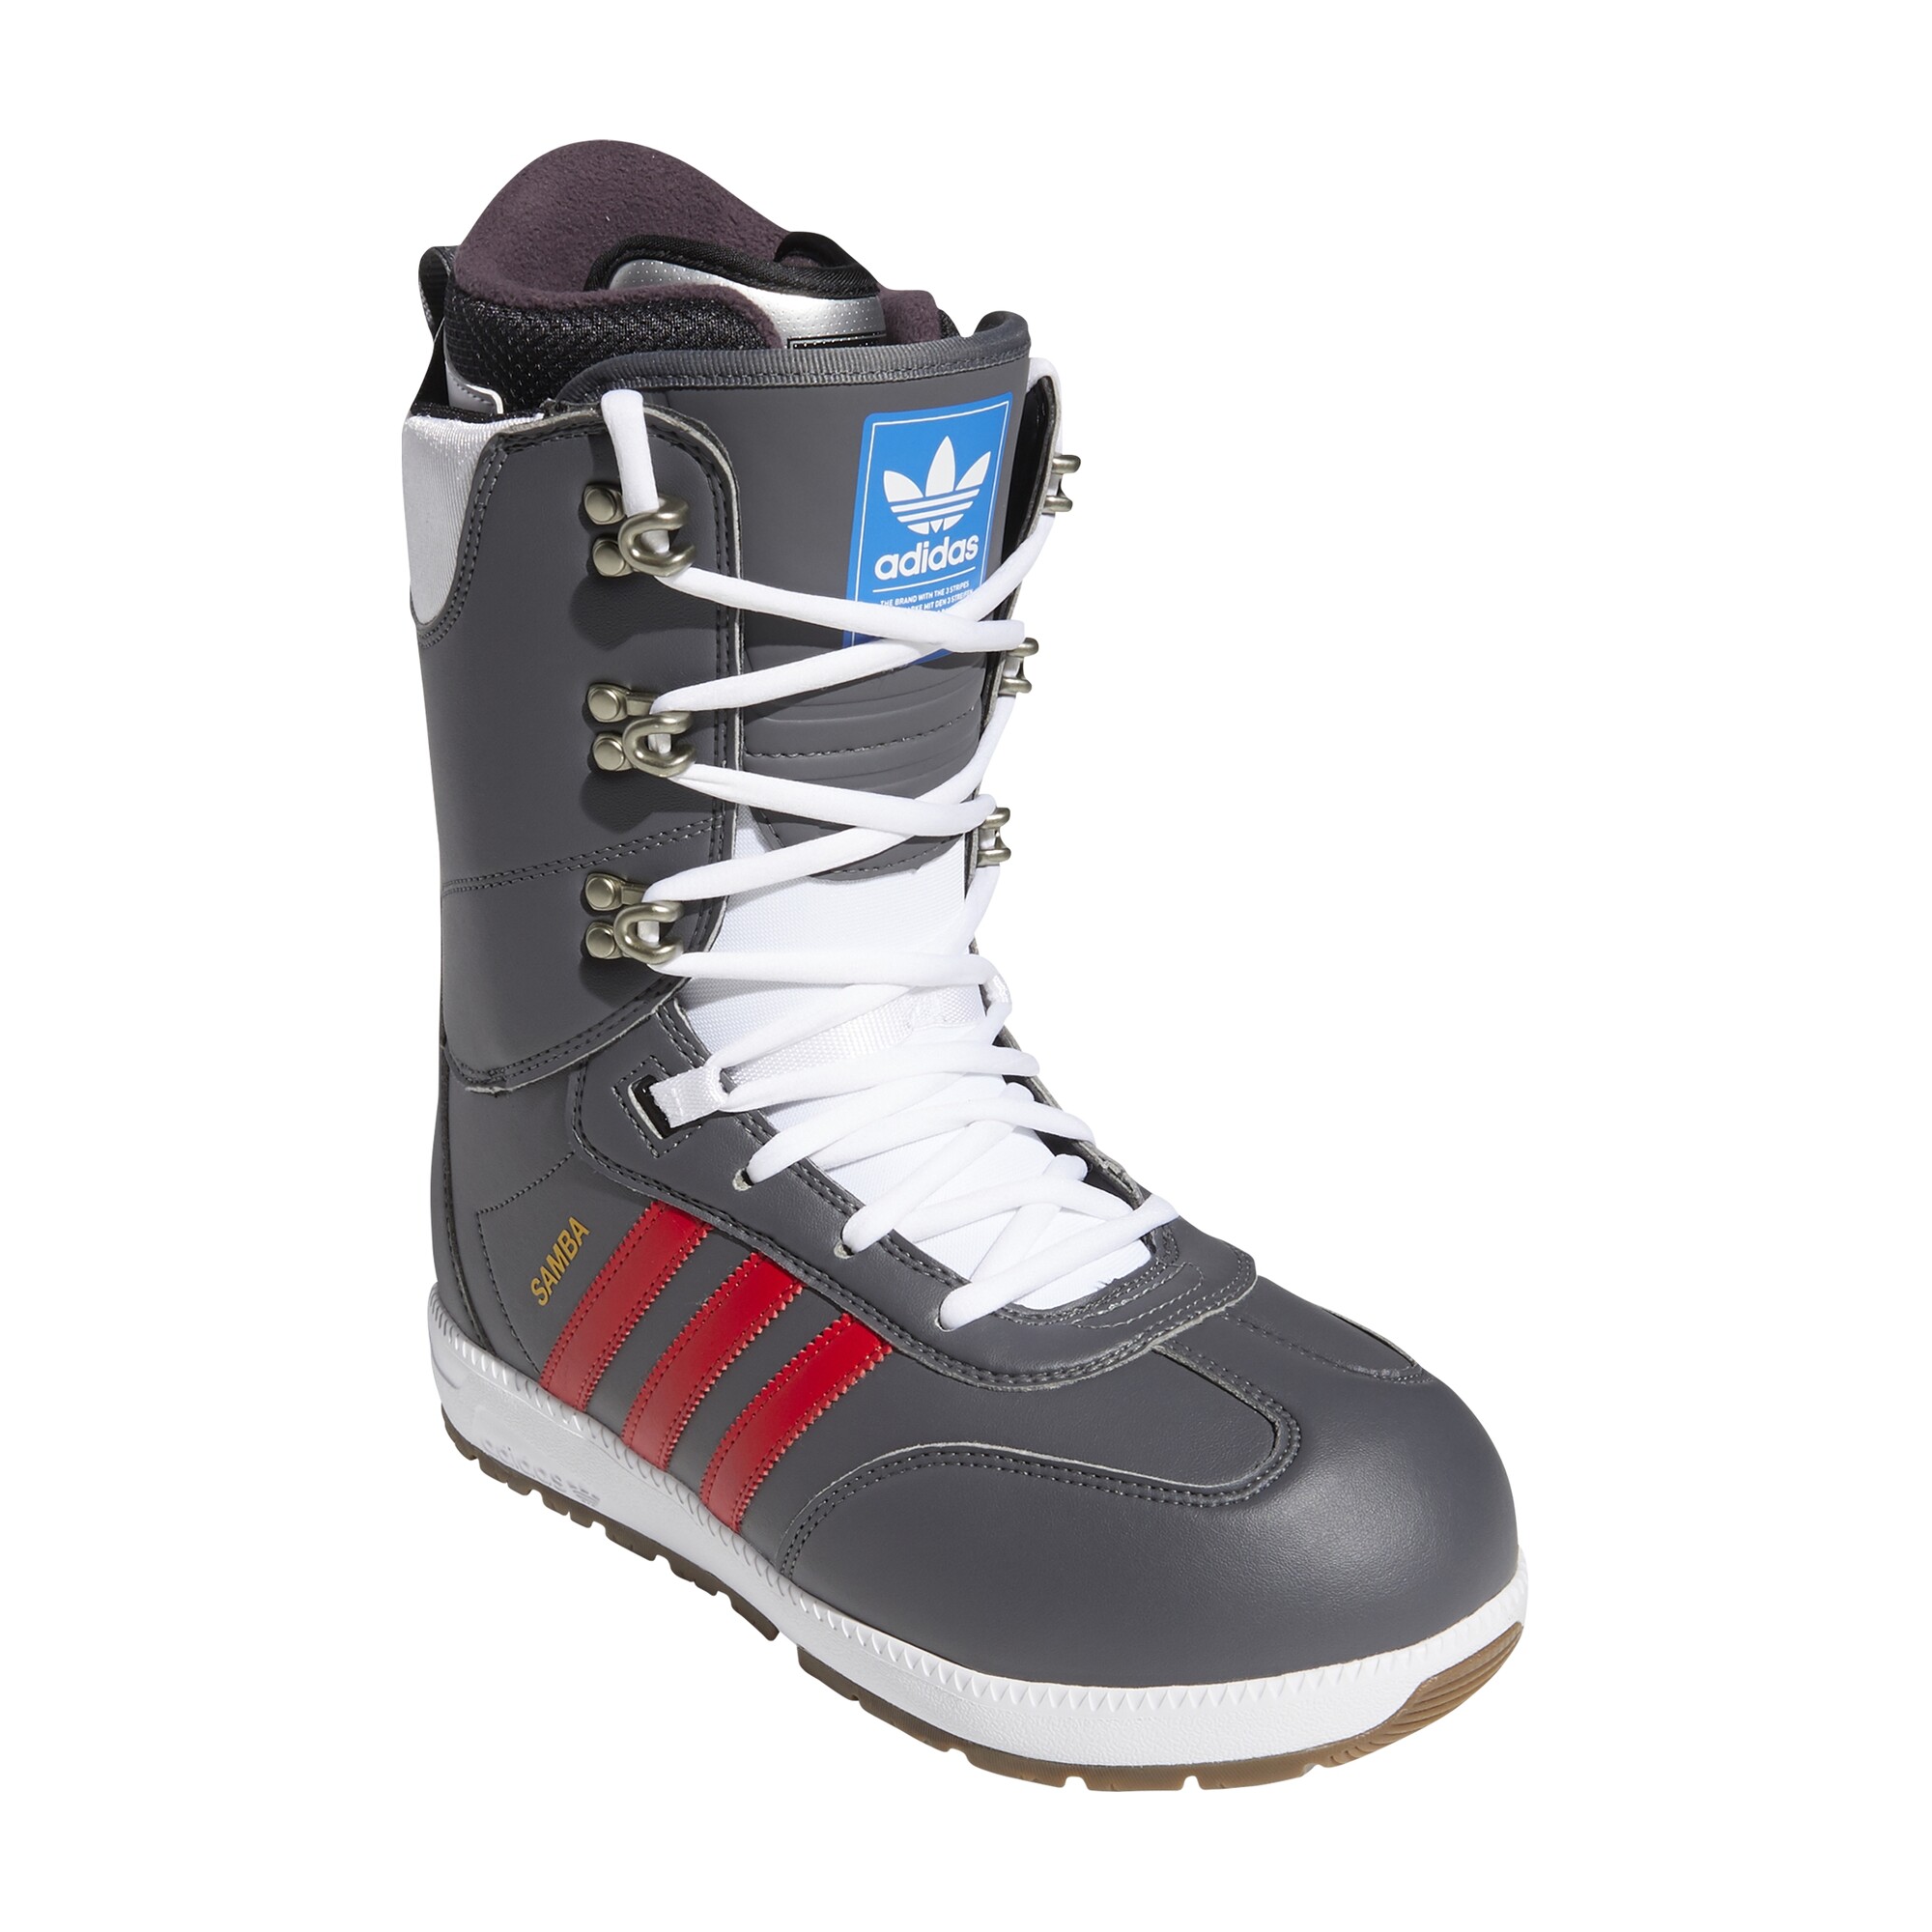 Bijwonen Adviseur Verbanning Snowboard schoenen kopen?